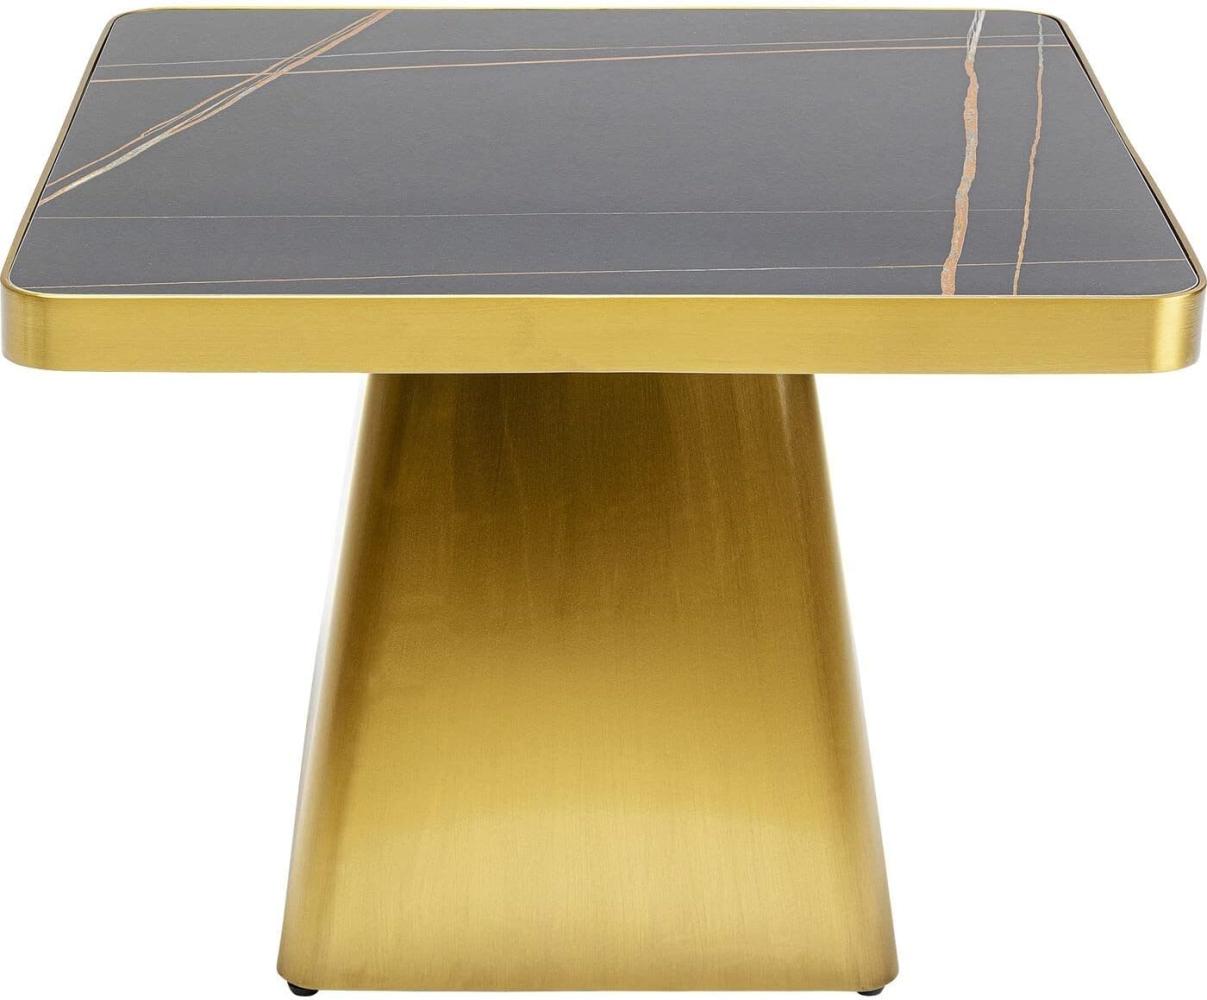 Kare Design Beistelltisch Miler, Gold/Schwarz, 60x60cm (H/B), Wohnzimmertisch, Couchtisch, Beistellltisch mit Stahlsockel, Mineralmarmor Tischplatte Bild 1